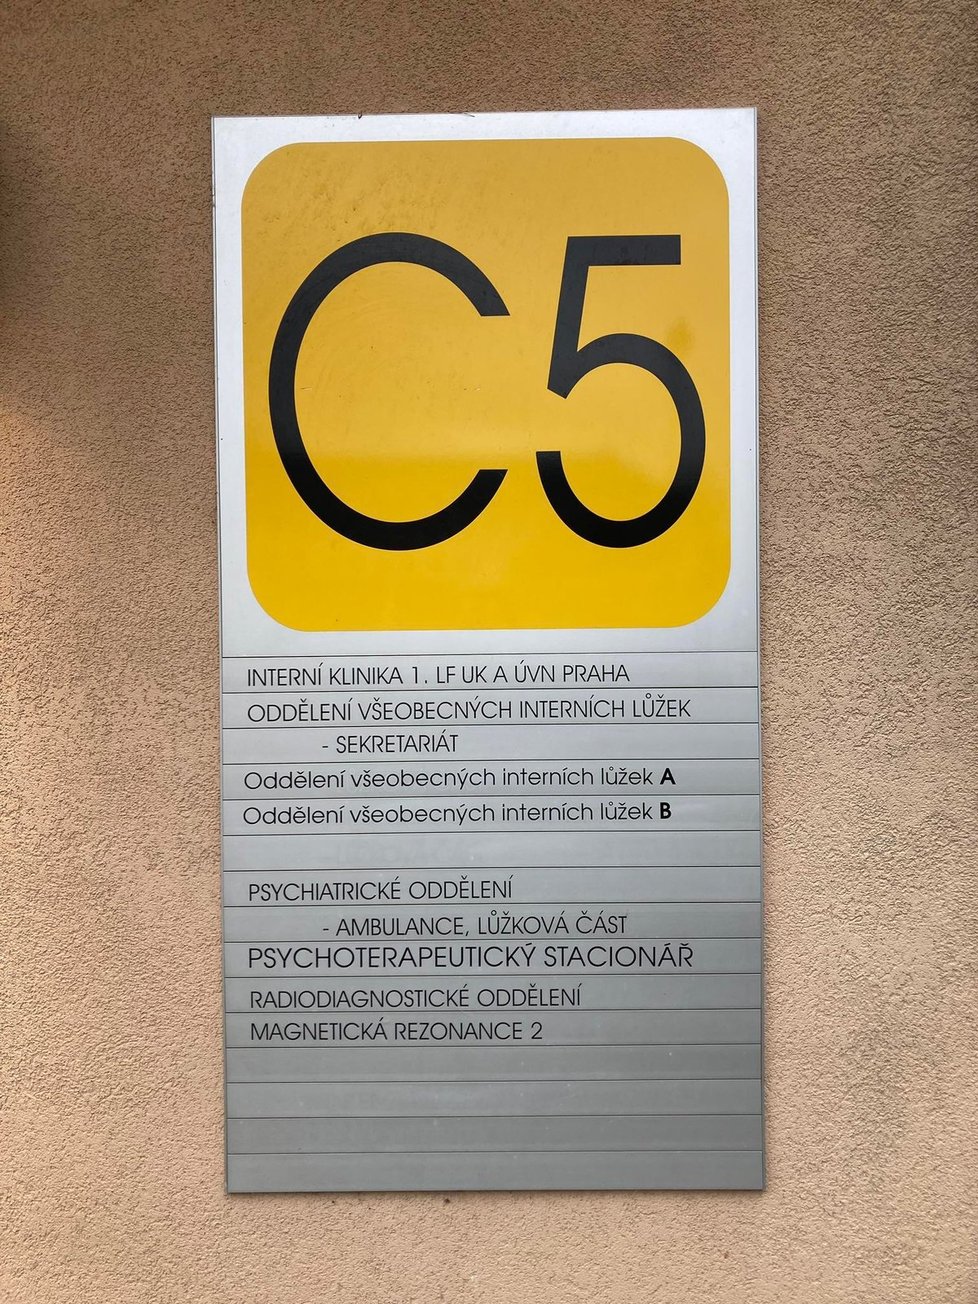 Pavilon C5 Ústřední vojenské nemocnice (4. 11. 2021)